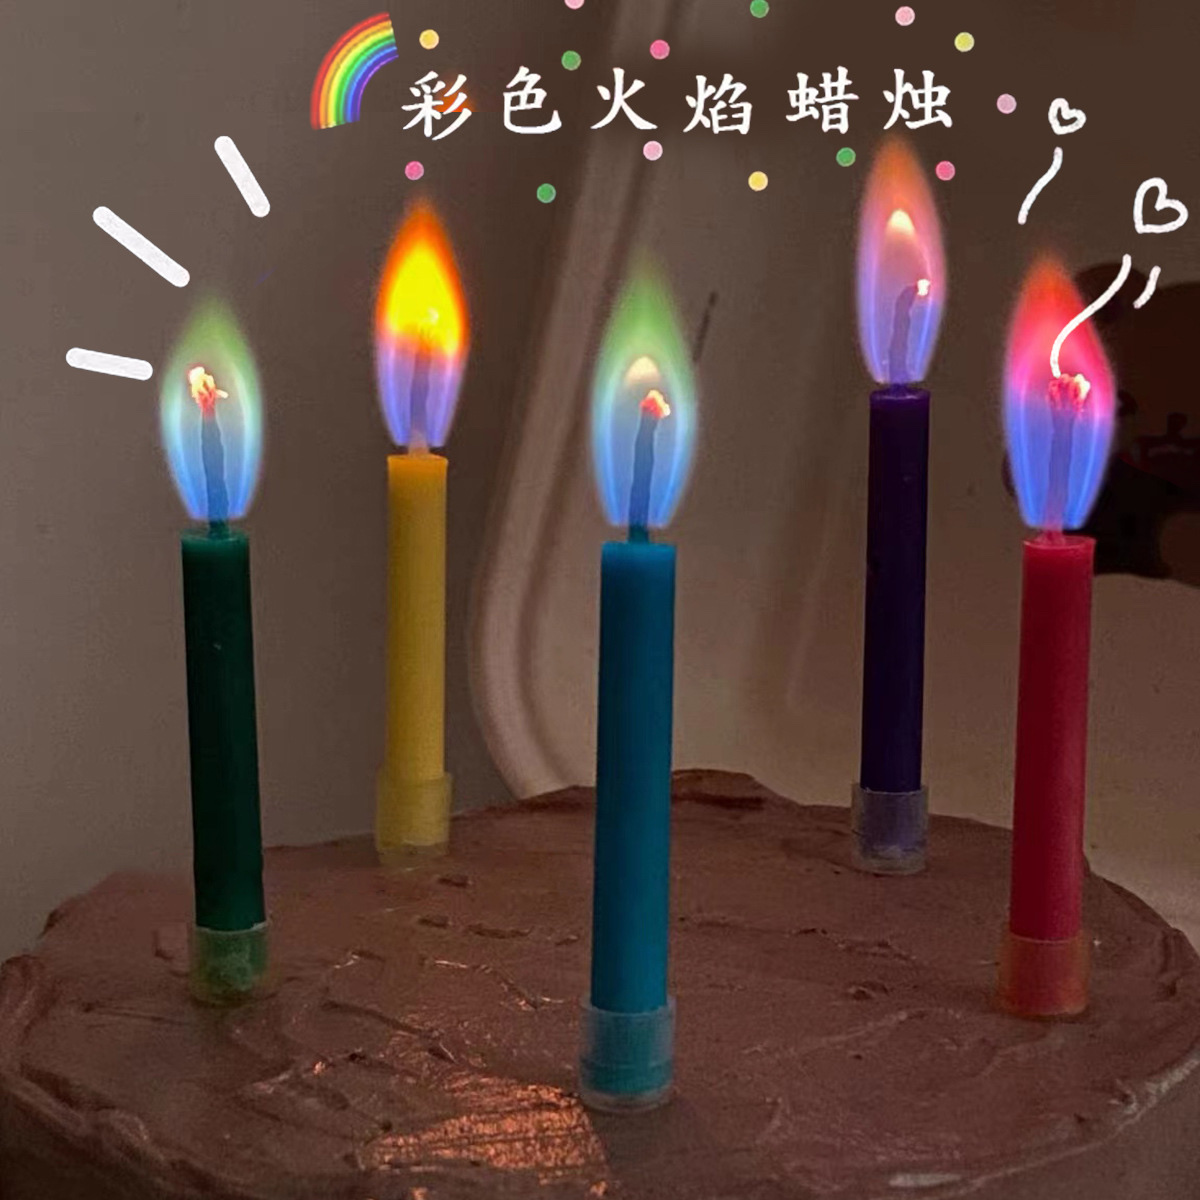 生日彩色火焰蜡烛 ins韩国网红创意儿童烘焙蛋糕装饰派对插件道具 详情图3